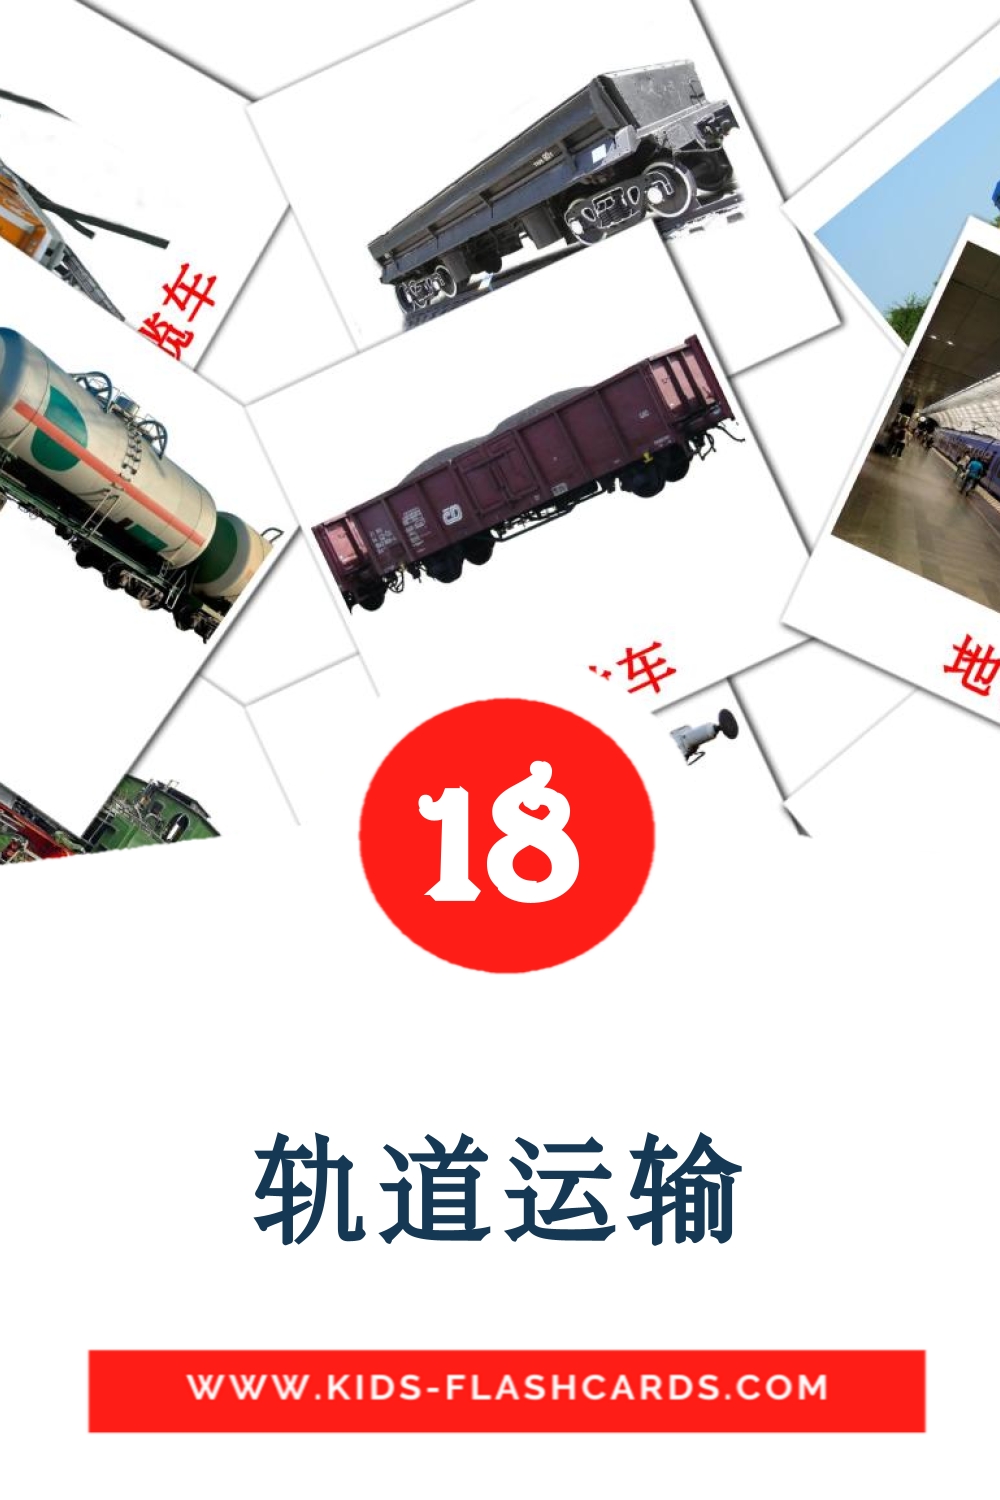 18 tarjetas didacticas de 轨道运输 para el jardín de infancia en chino(simplificado)